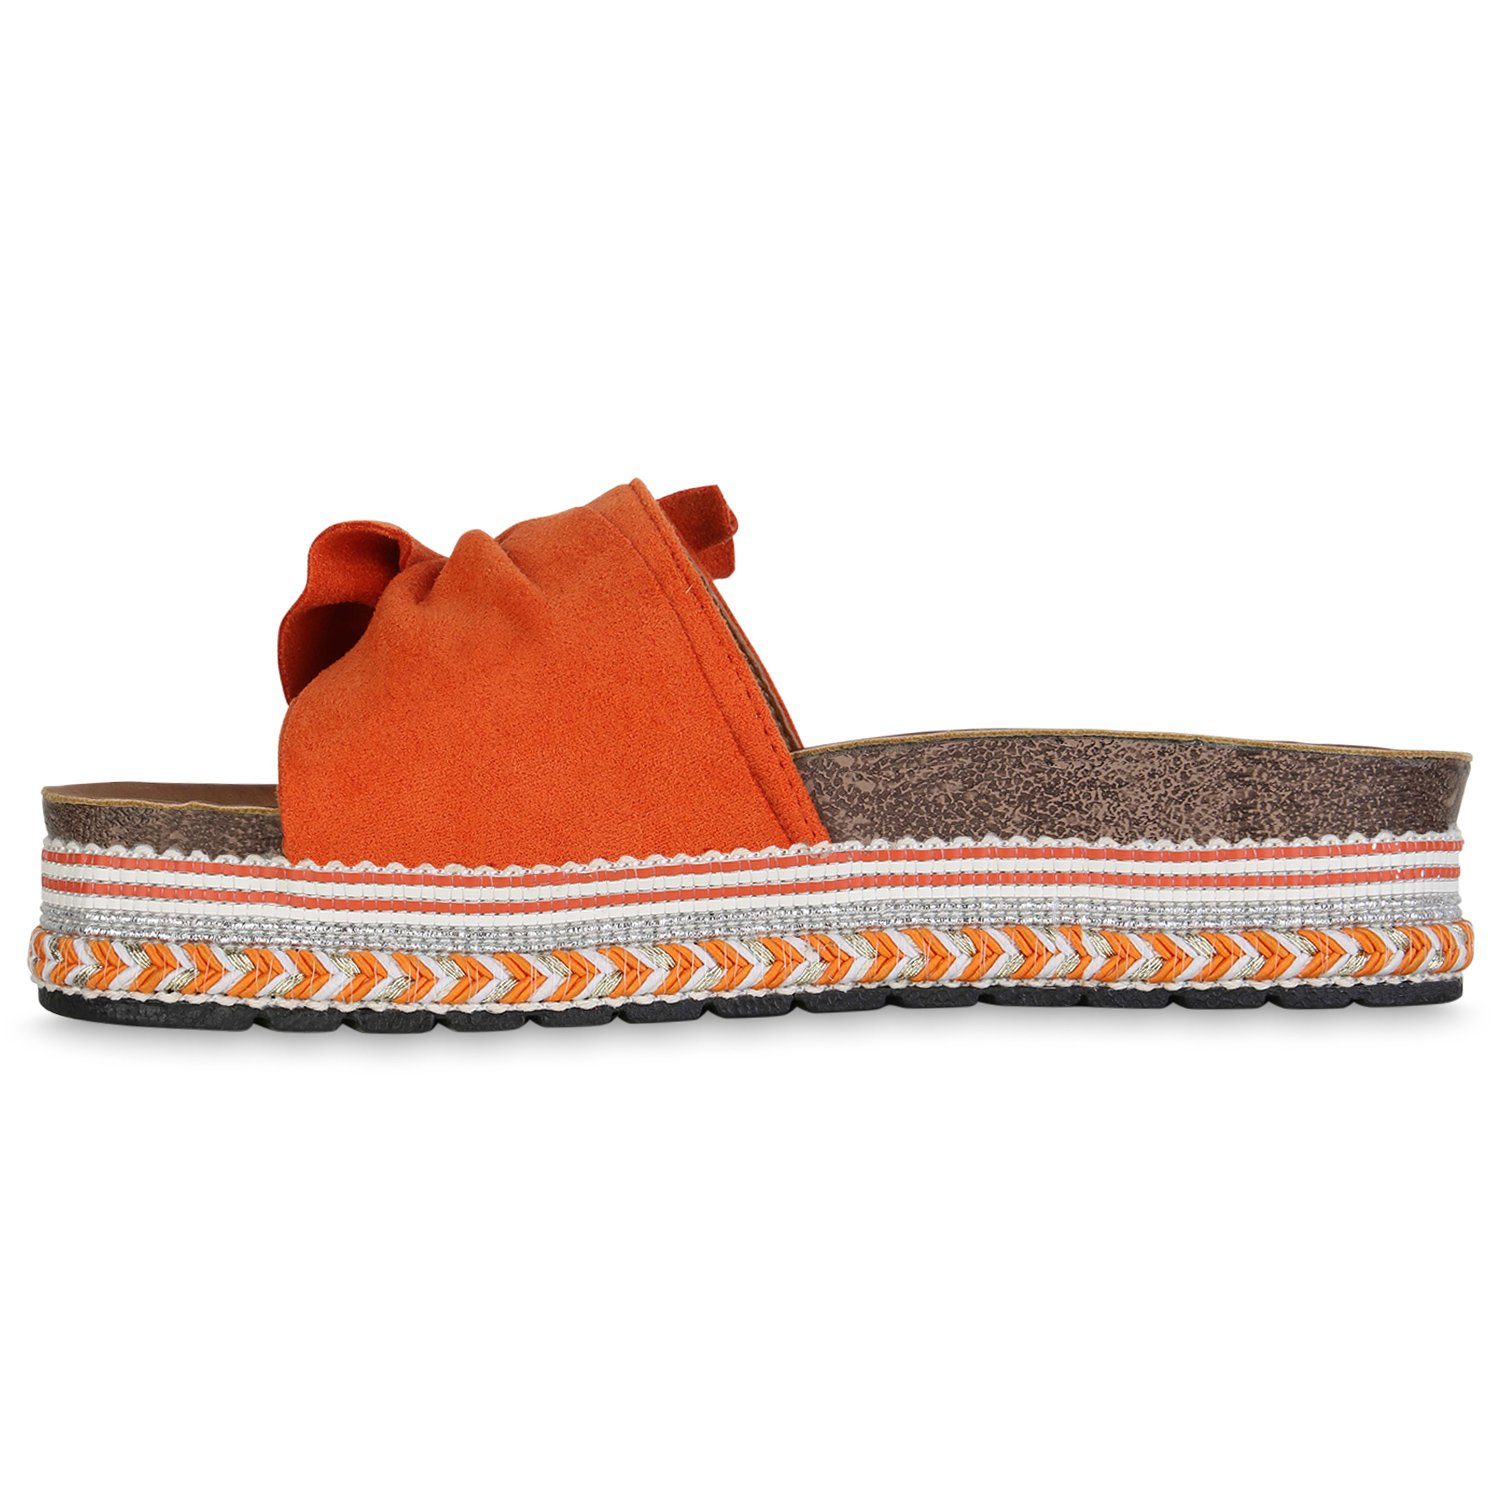 HILL Sandalette 840278 VAN Schuhe Orange